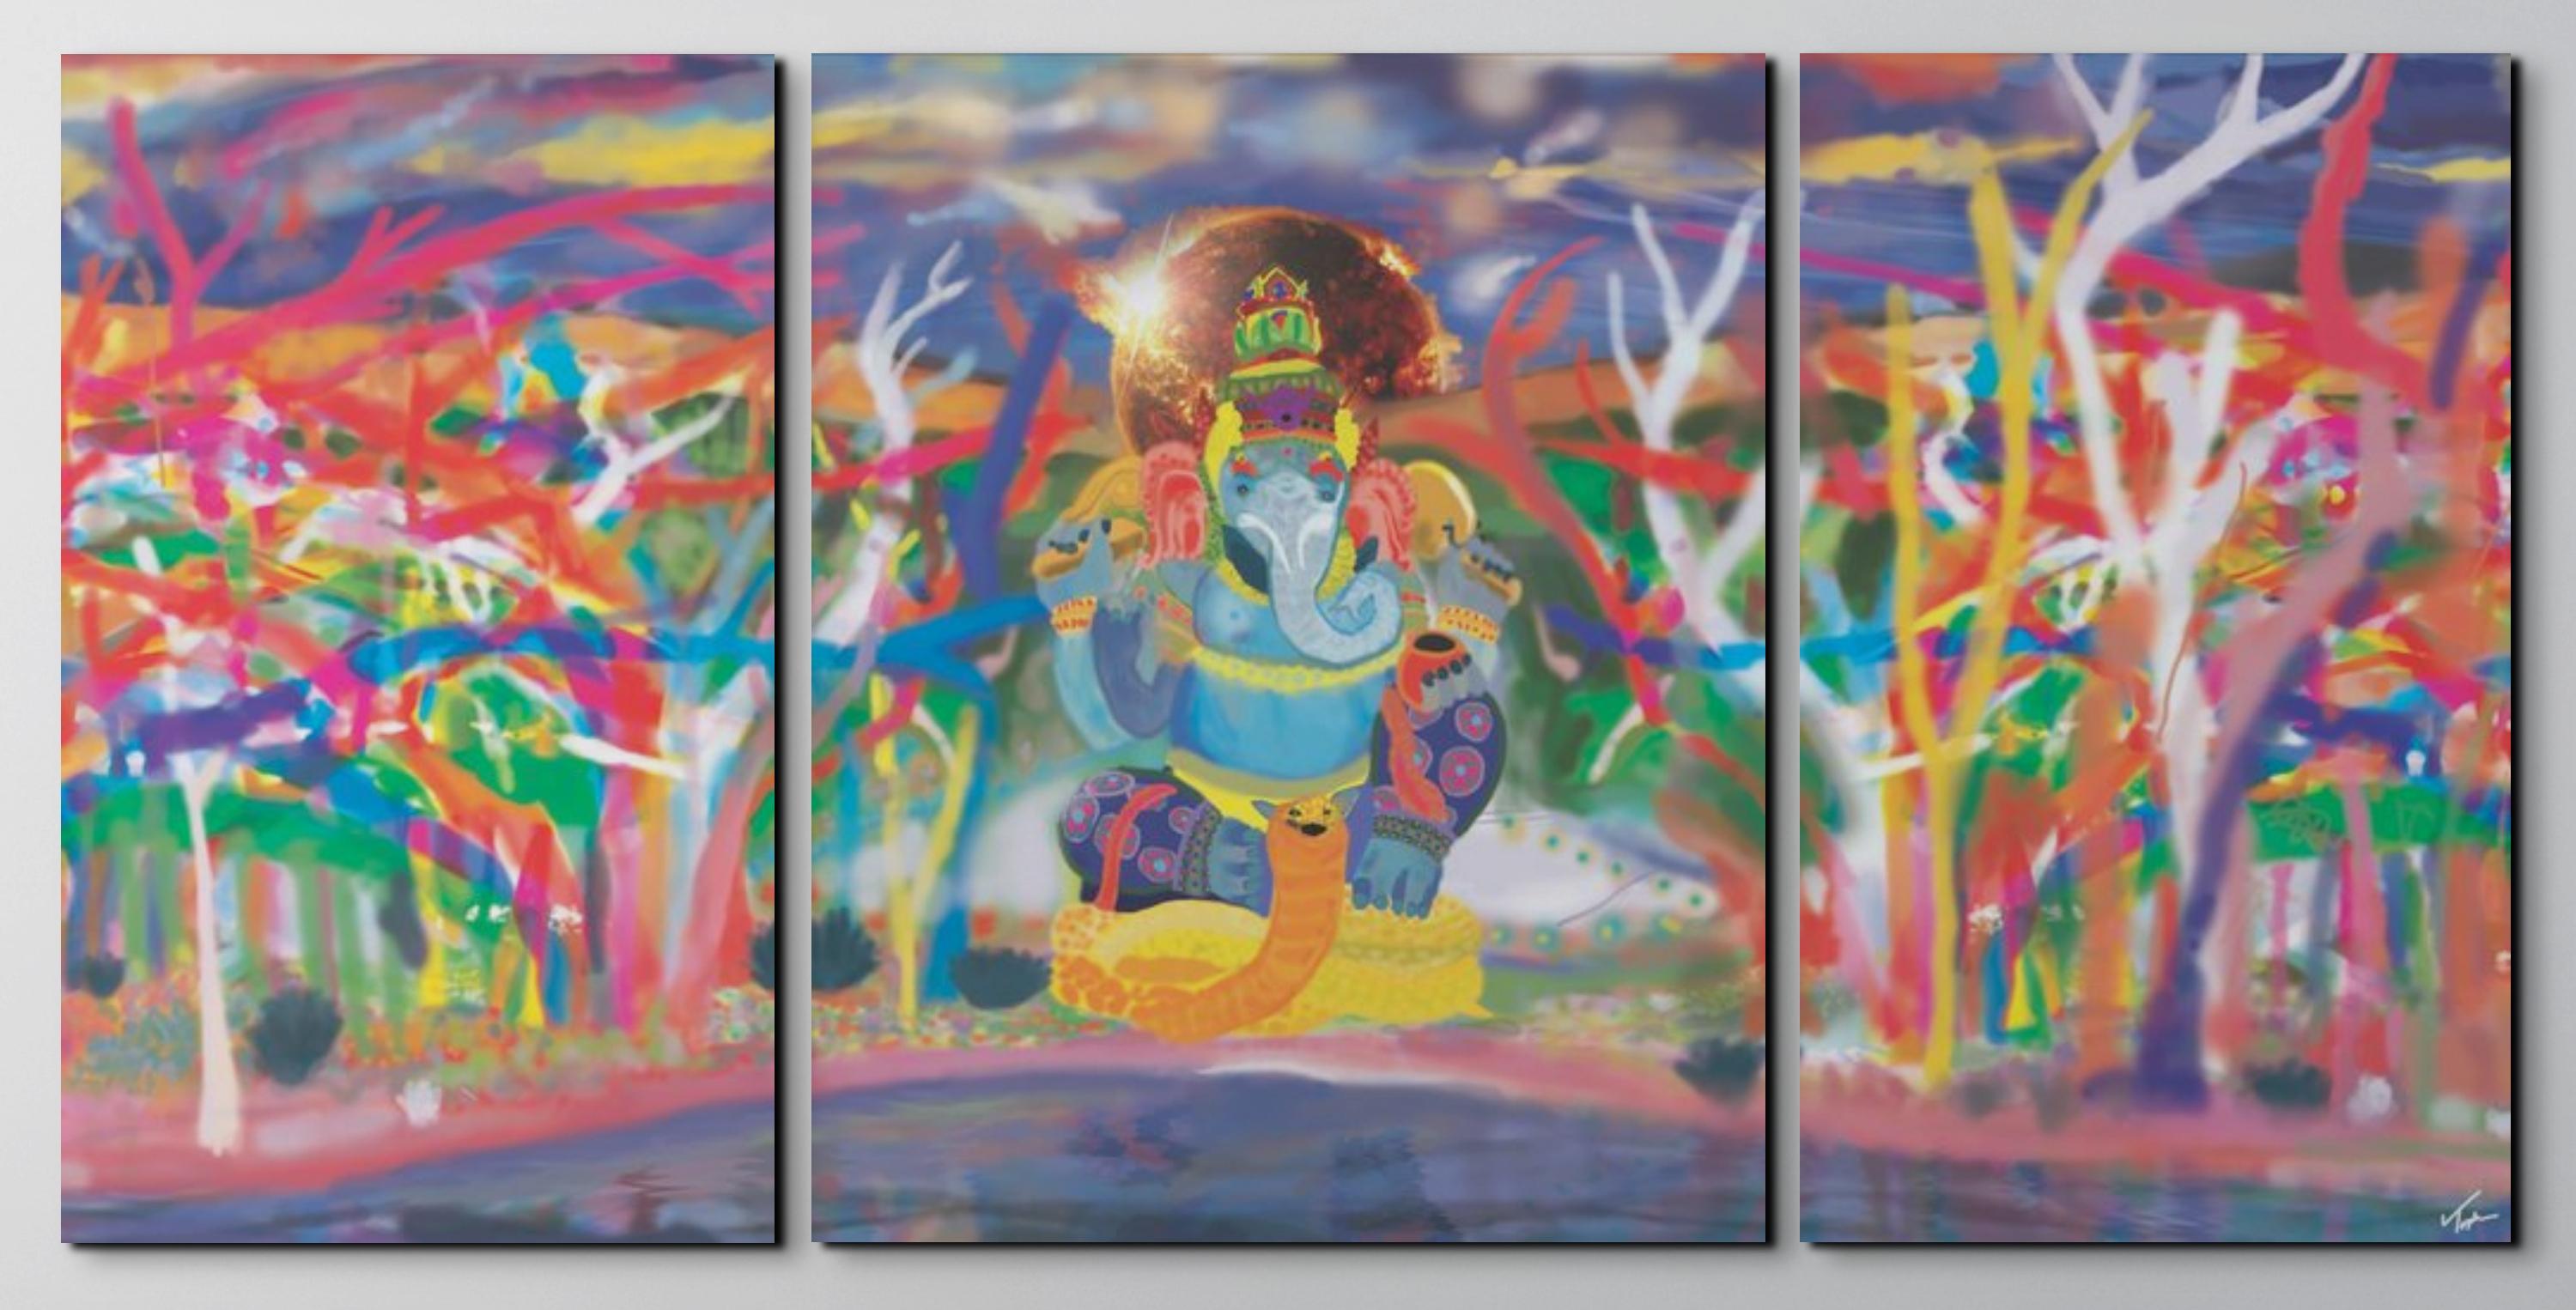 Topher Straus Figurative Painting – Ganesha, Modernes impressionistisches figuratives Gemälde, 2022, Original Triptychon